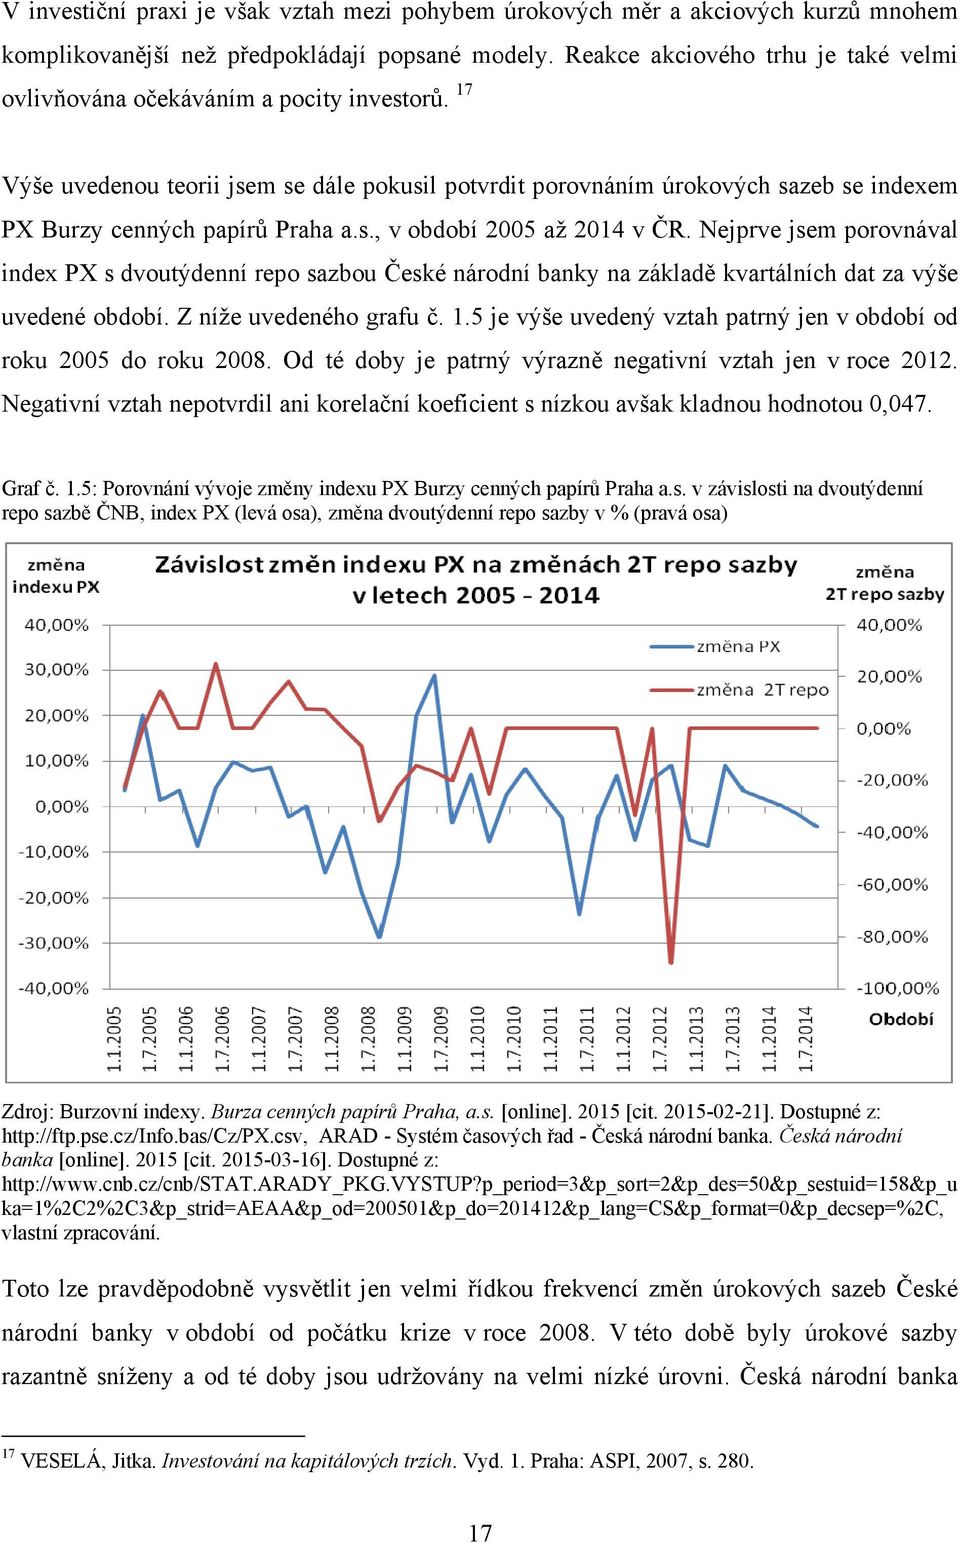 17 Výše uvedenou teorii jsem se dále pokusil potvrdit porovnáním úrokových sazeb se indexemem PX Burzy cenných papírů Praha a.s., v období 2005 až 2014 v ČR.